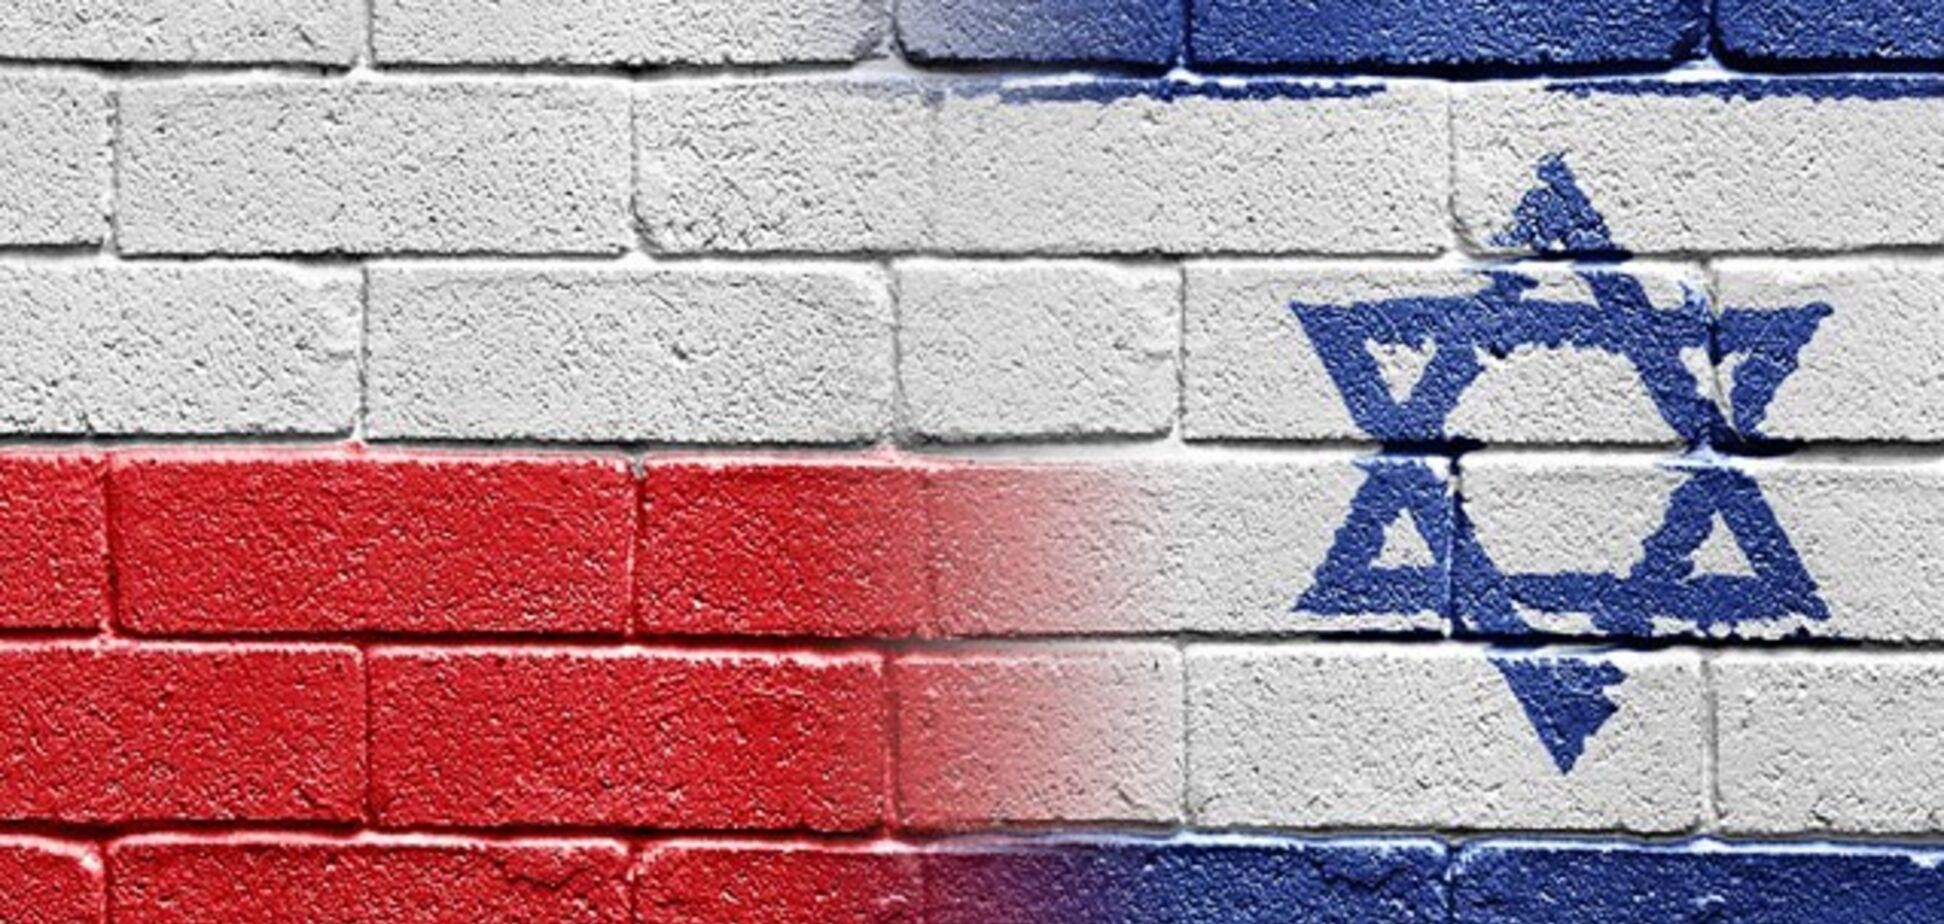   Польша отменила визит делегации Израиля: назревает международный скандал